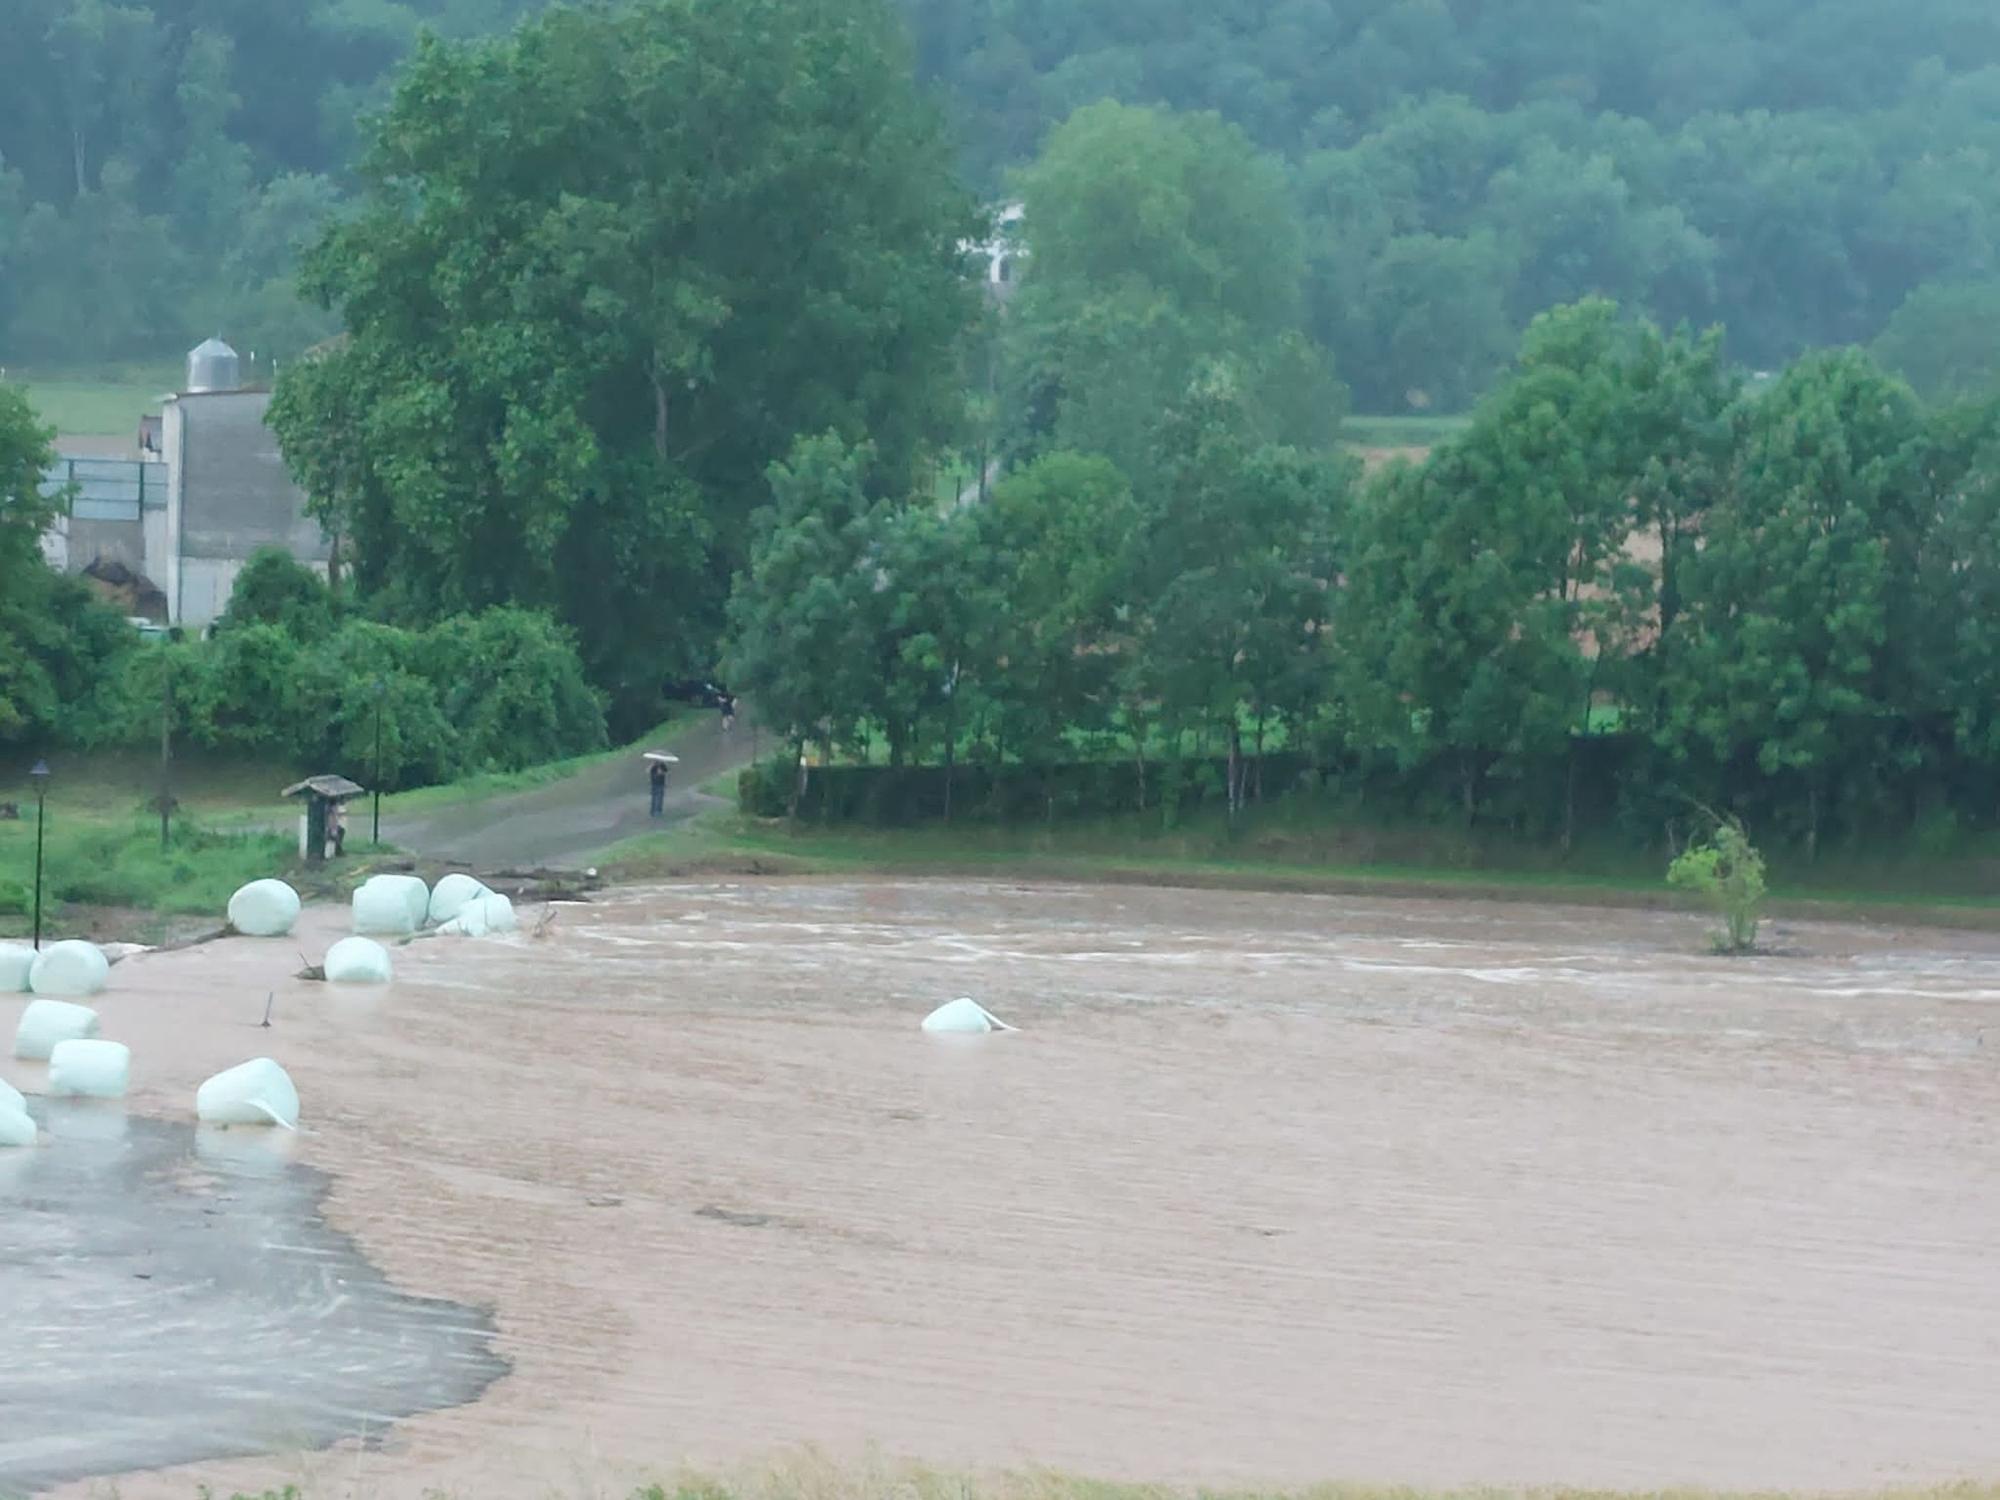 Les fortes pluges desborden rieres i causen inundacions a zones interiors de Girona